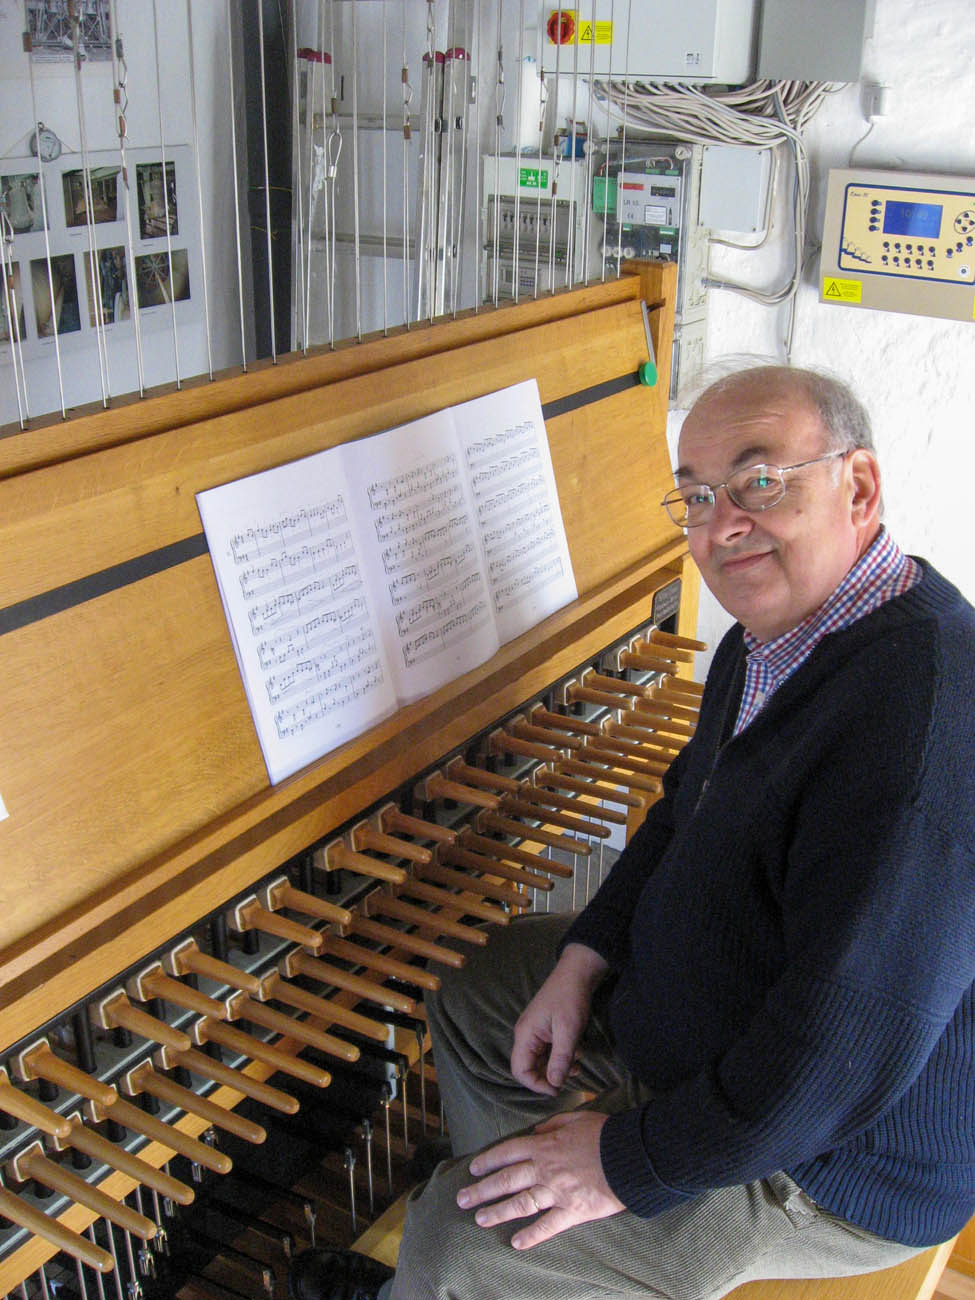 Klokkespilskoncert (carillon concert) – Aarhus Rådhus (DE) - Photo: Pressefoto